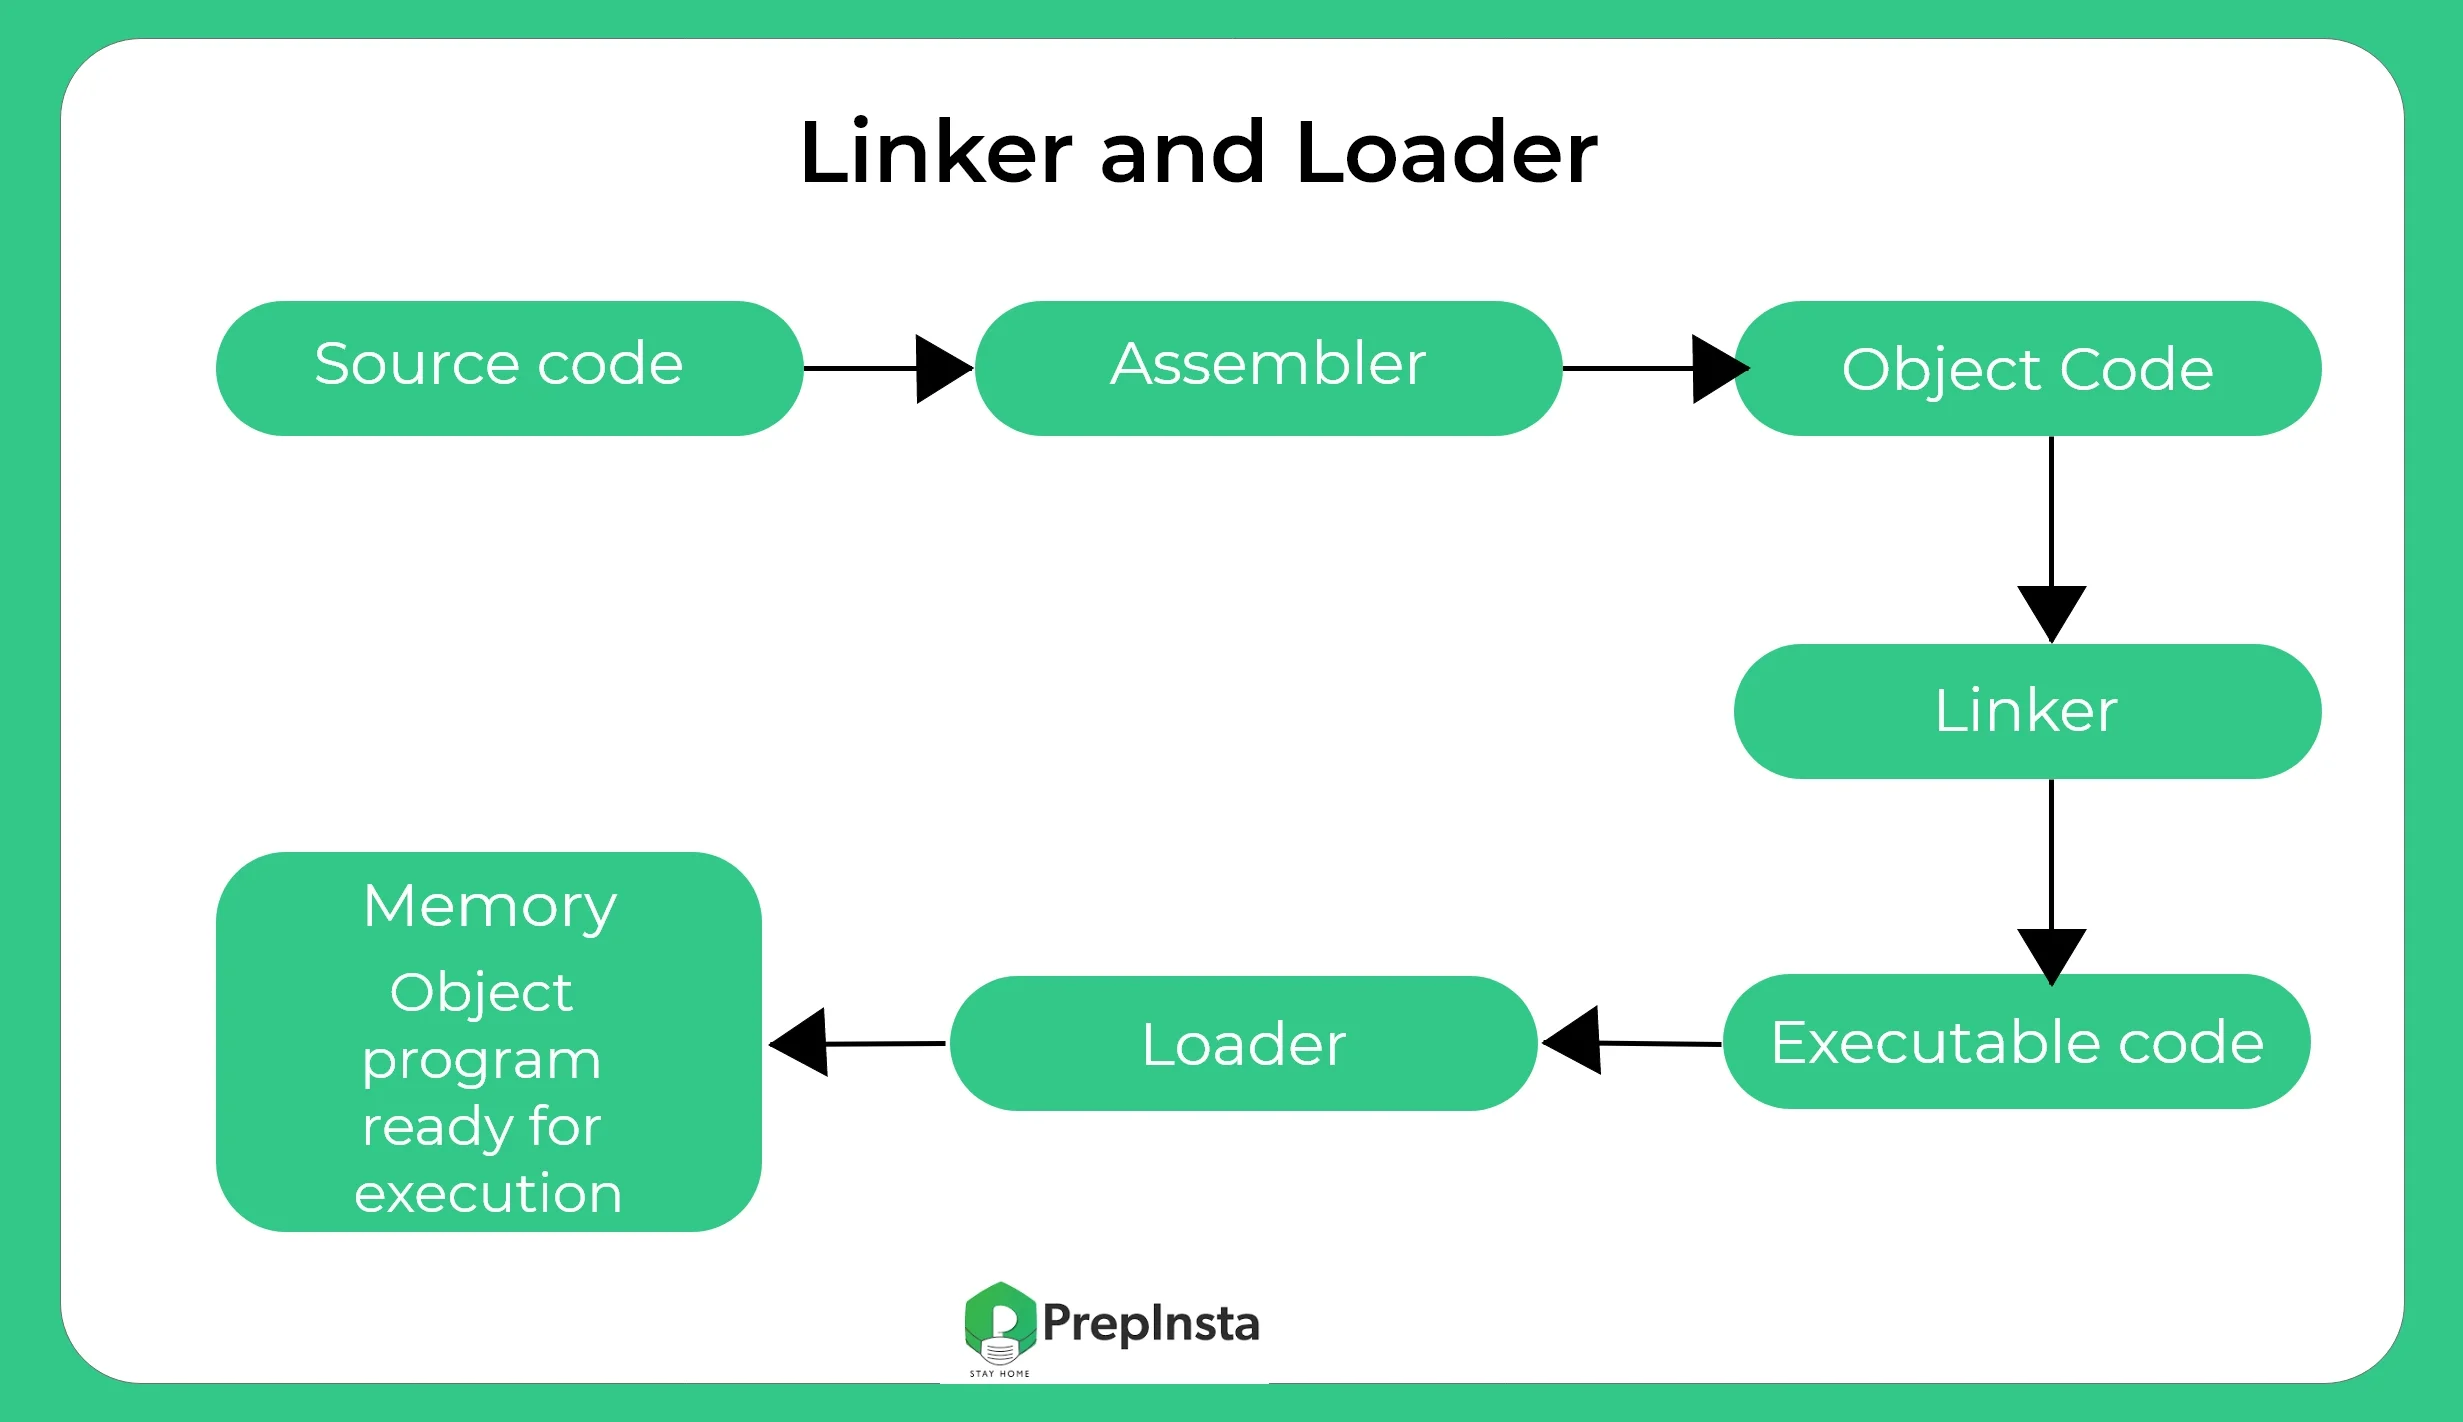 Linker and loader